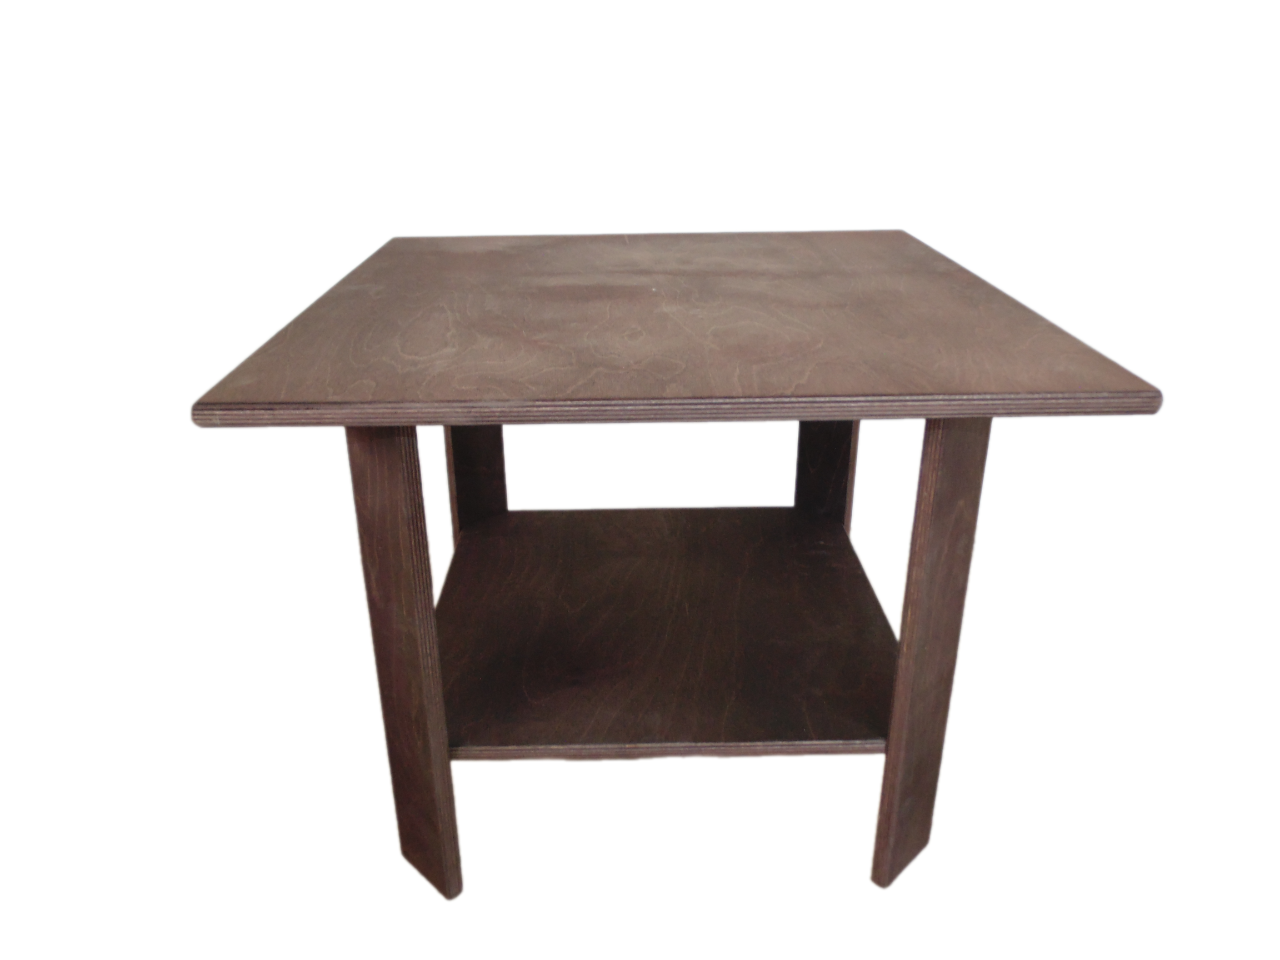 Кофейный столик "Дуб" 55x55x43 см. материал дерево.